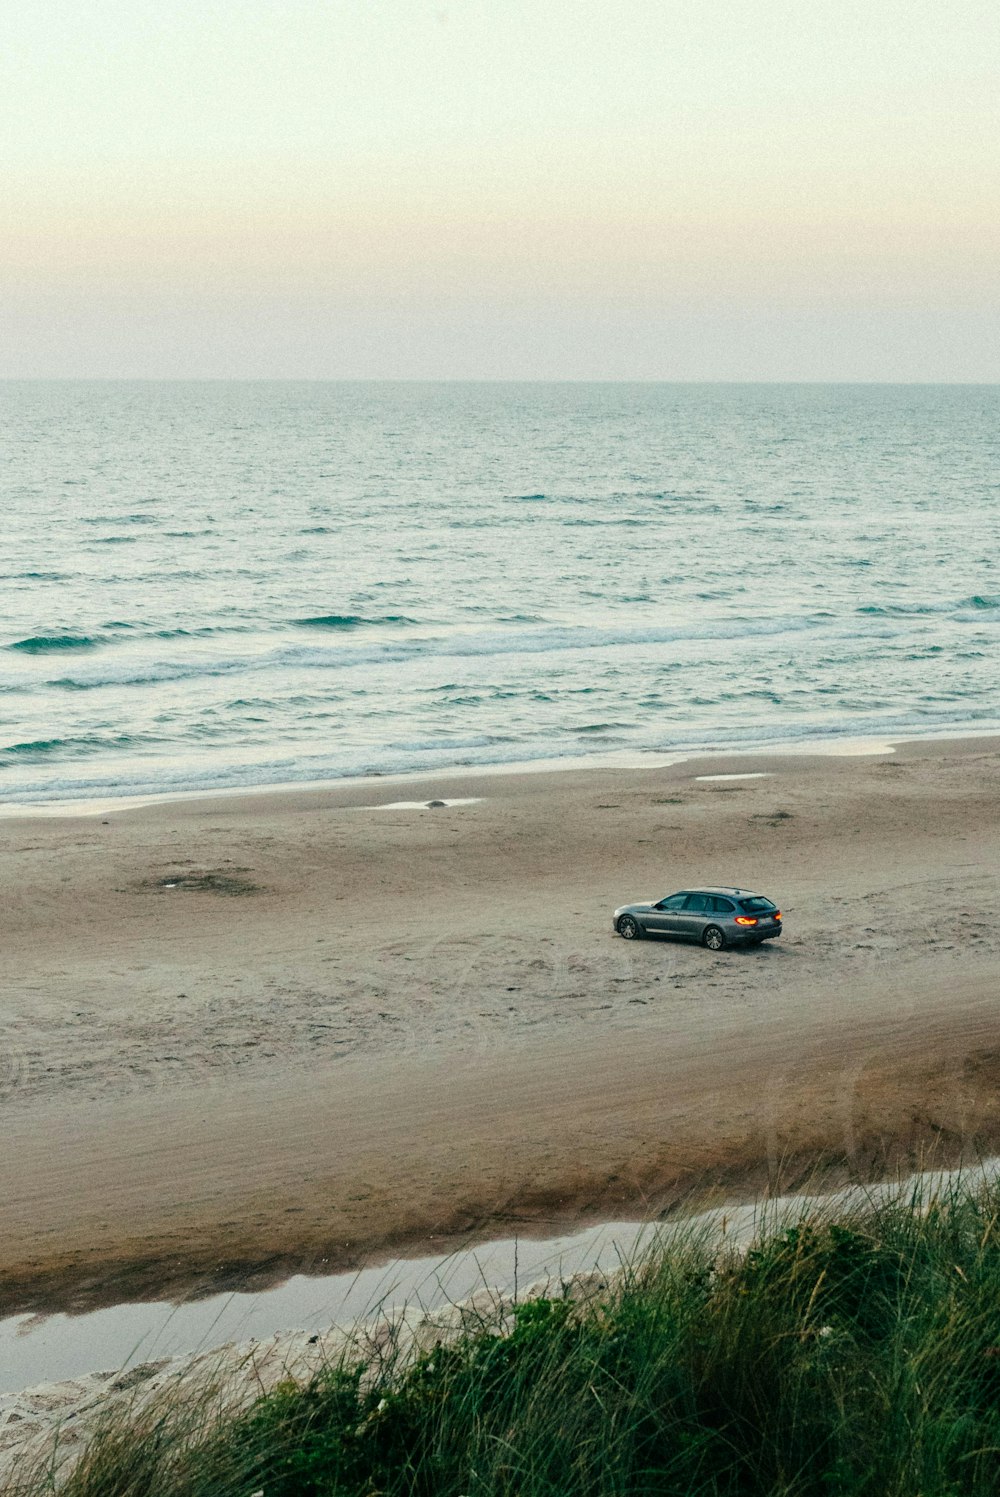 a car driving on a beach